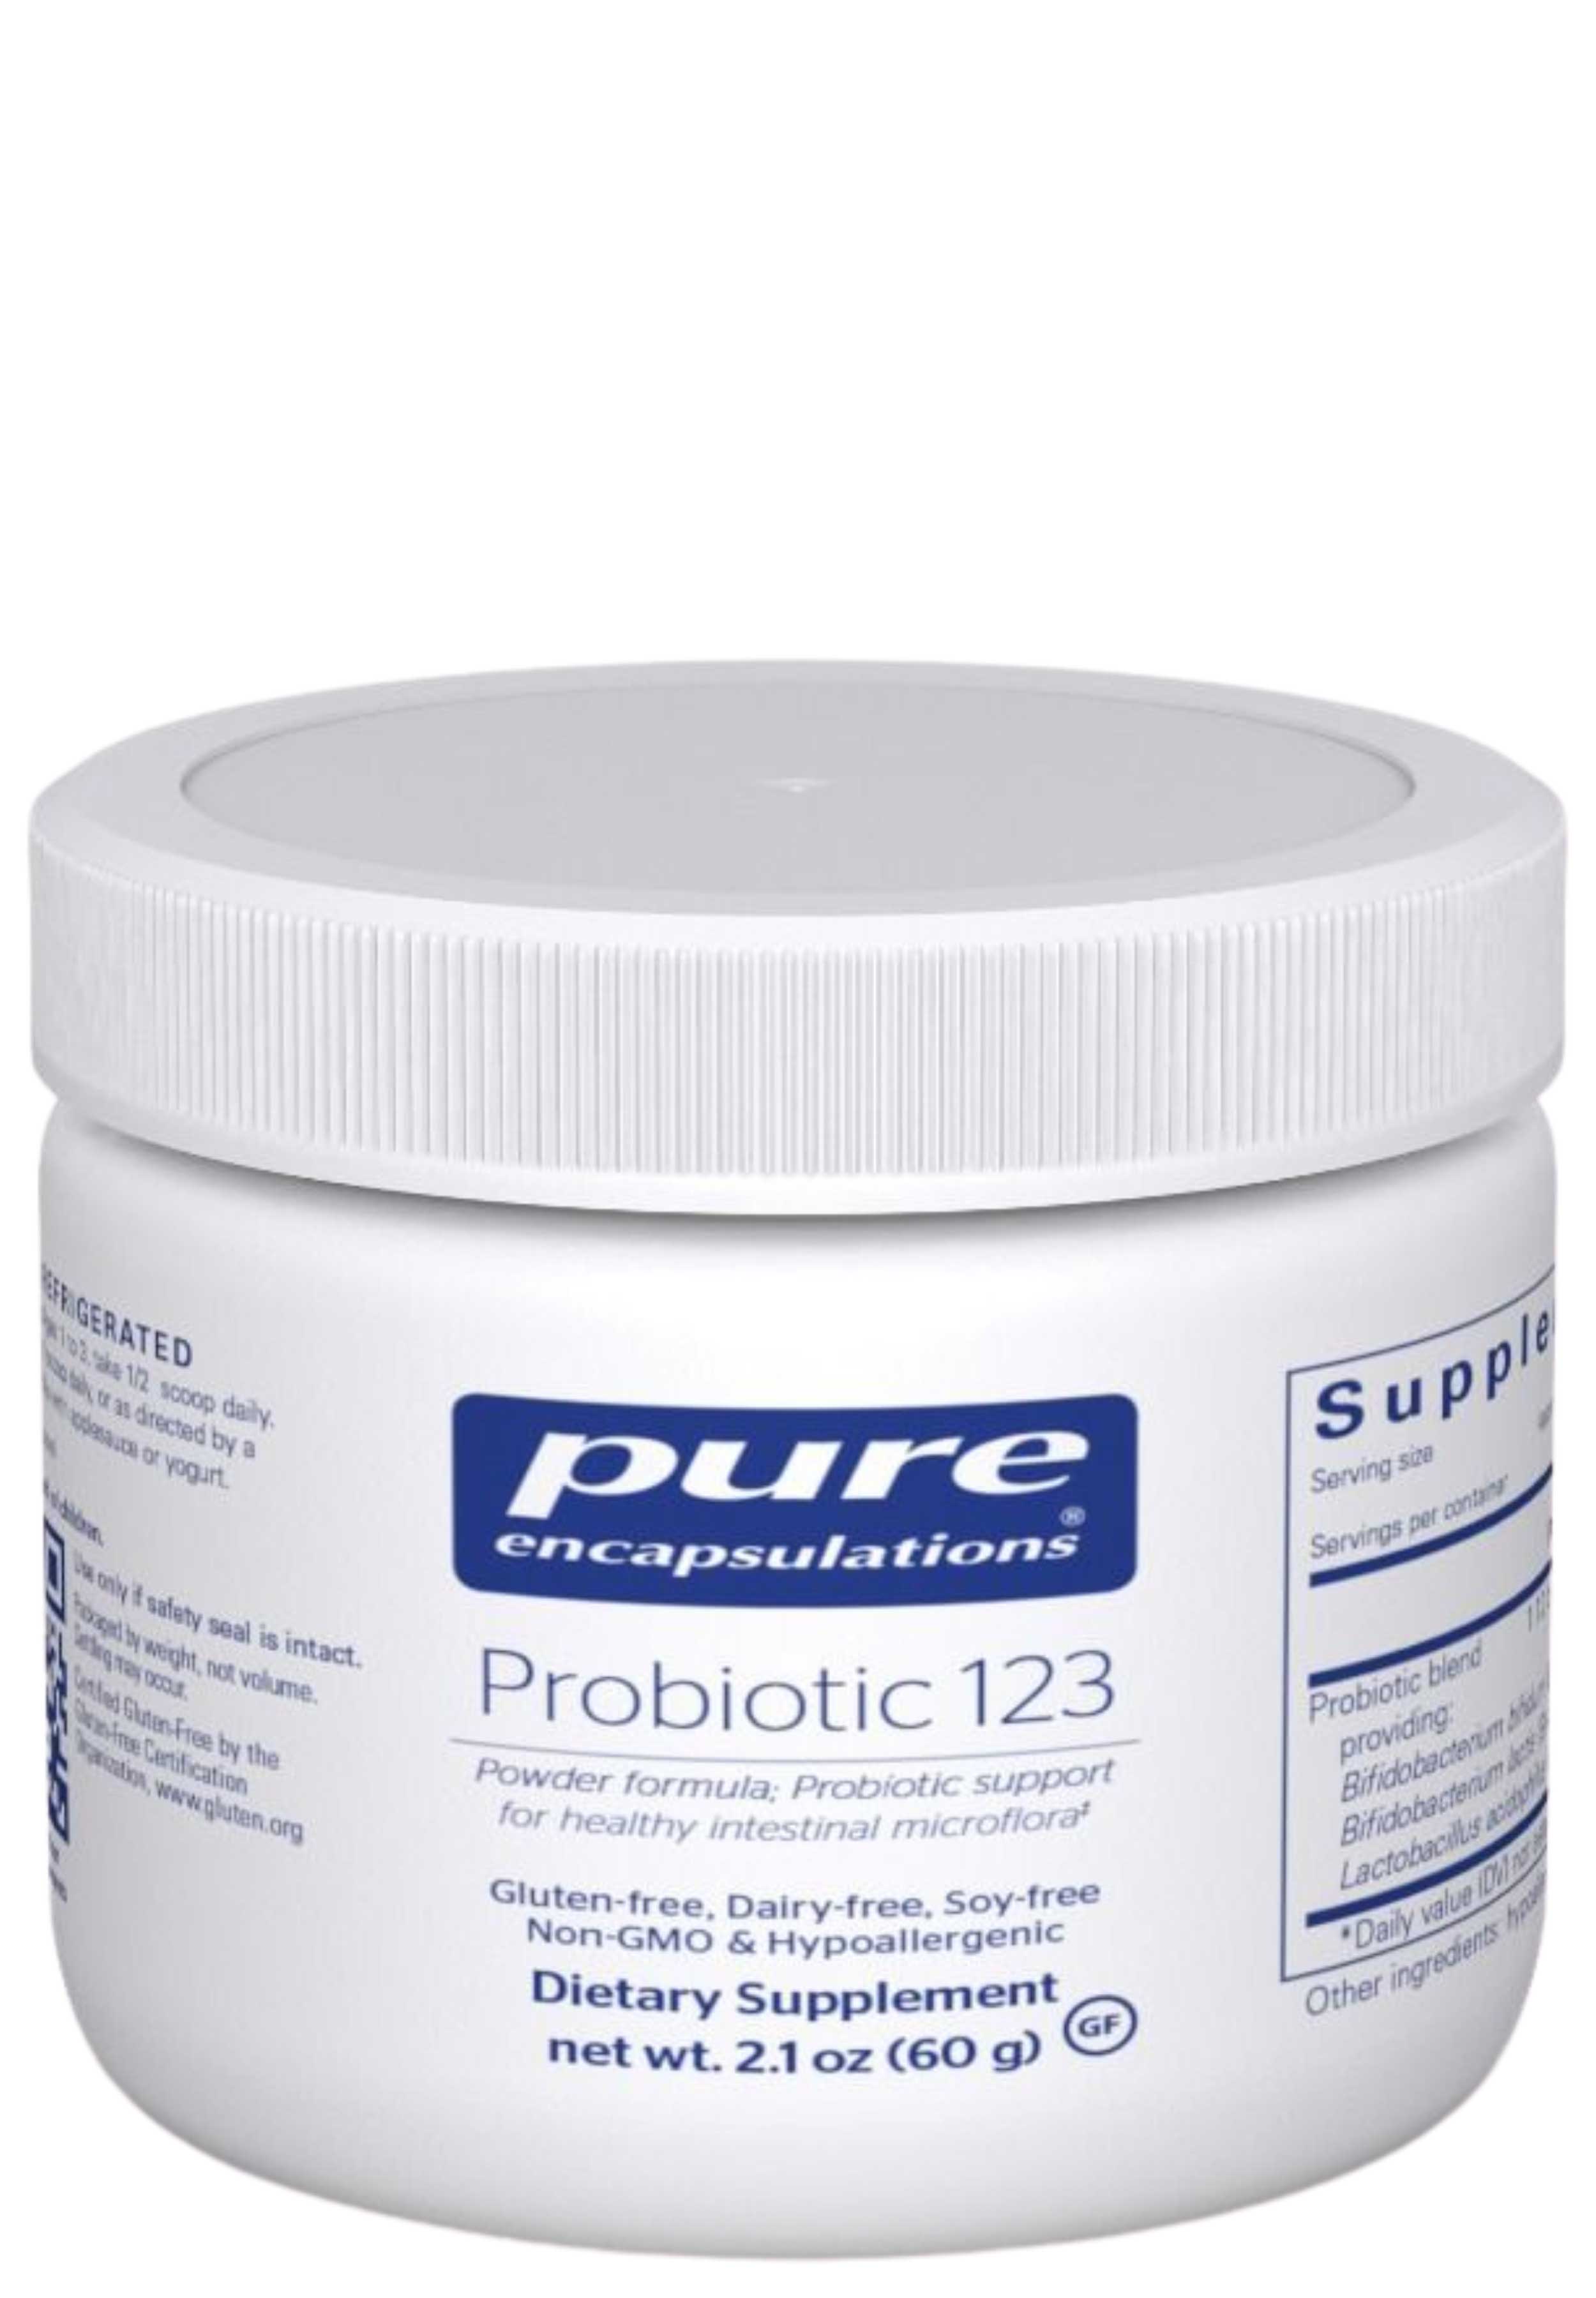 Pure Encapsulations Probiotic 123 